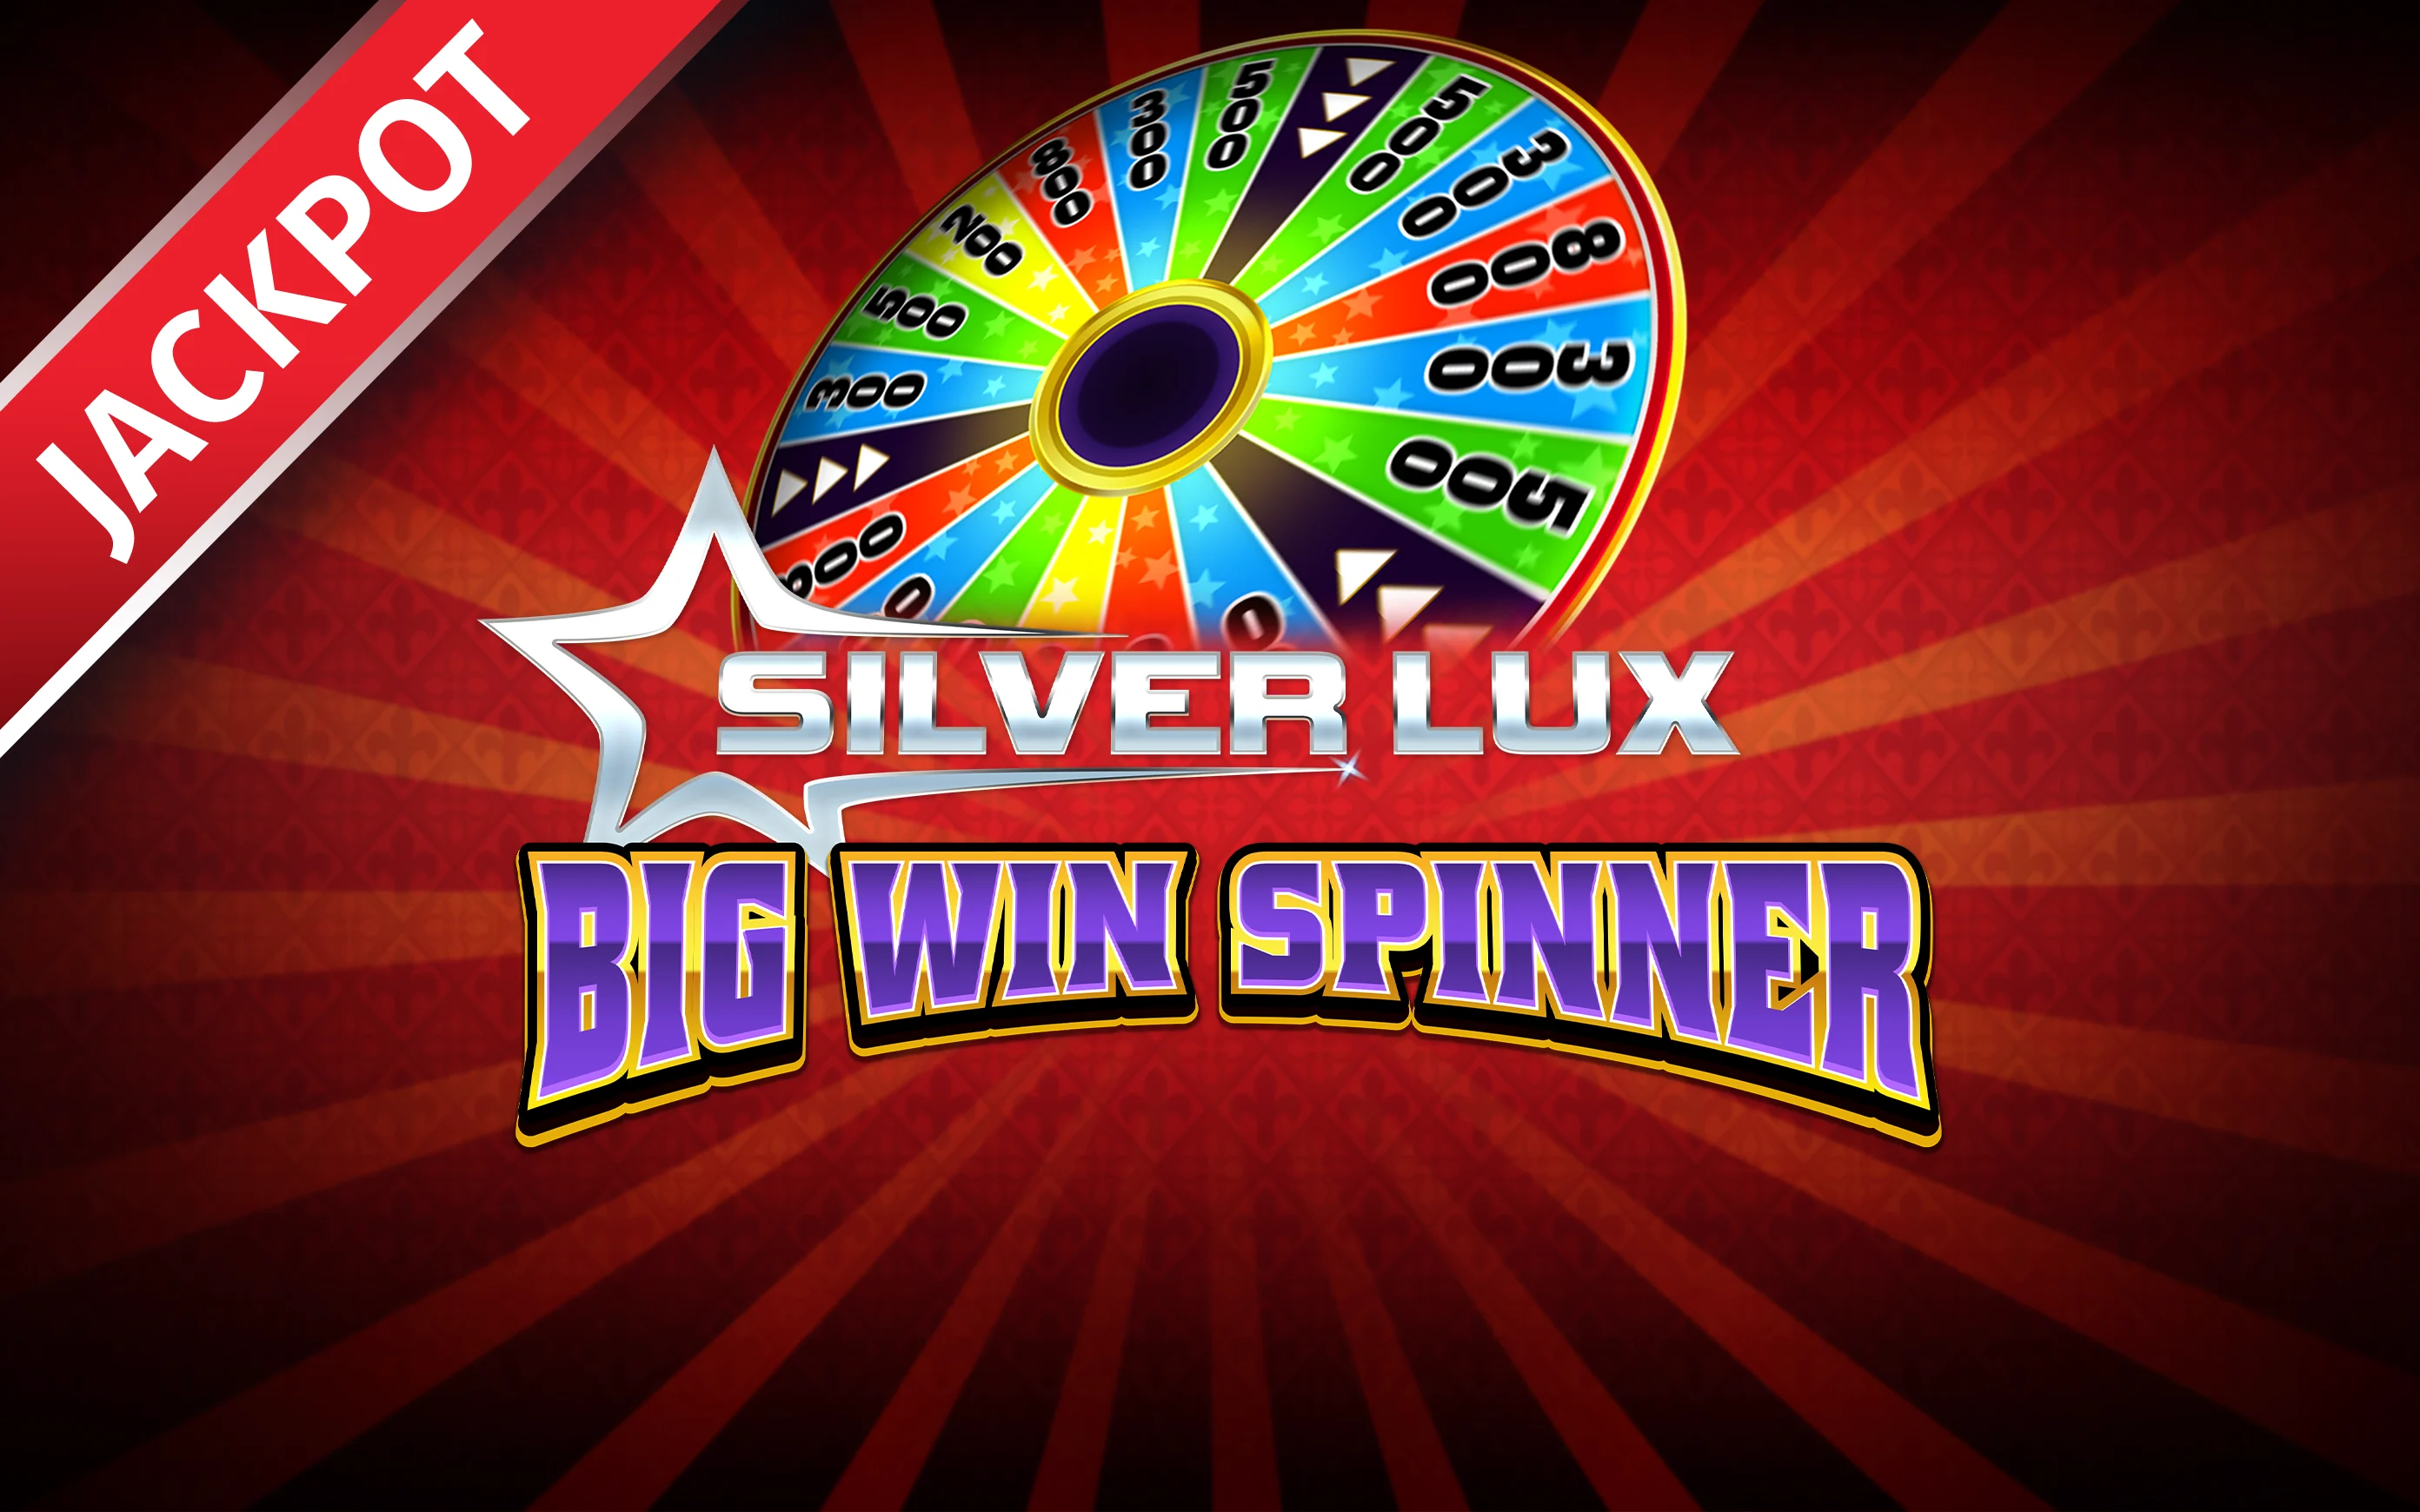 Gioca a Silver Lux – Big Win Spinner sul casino online Starcasino.be